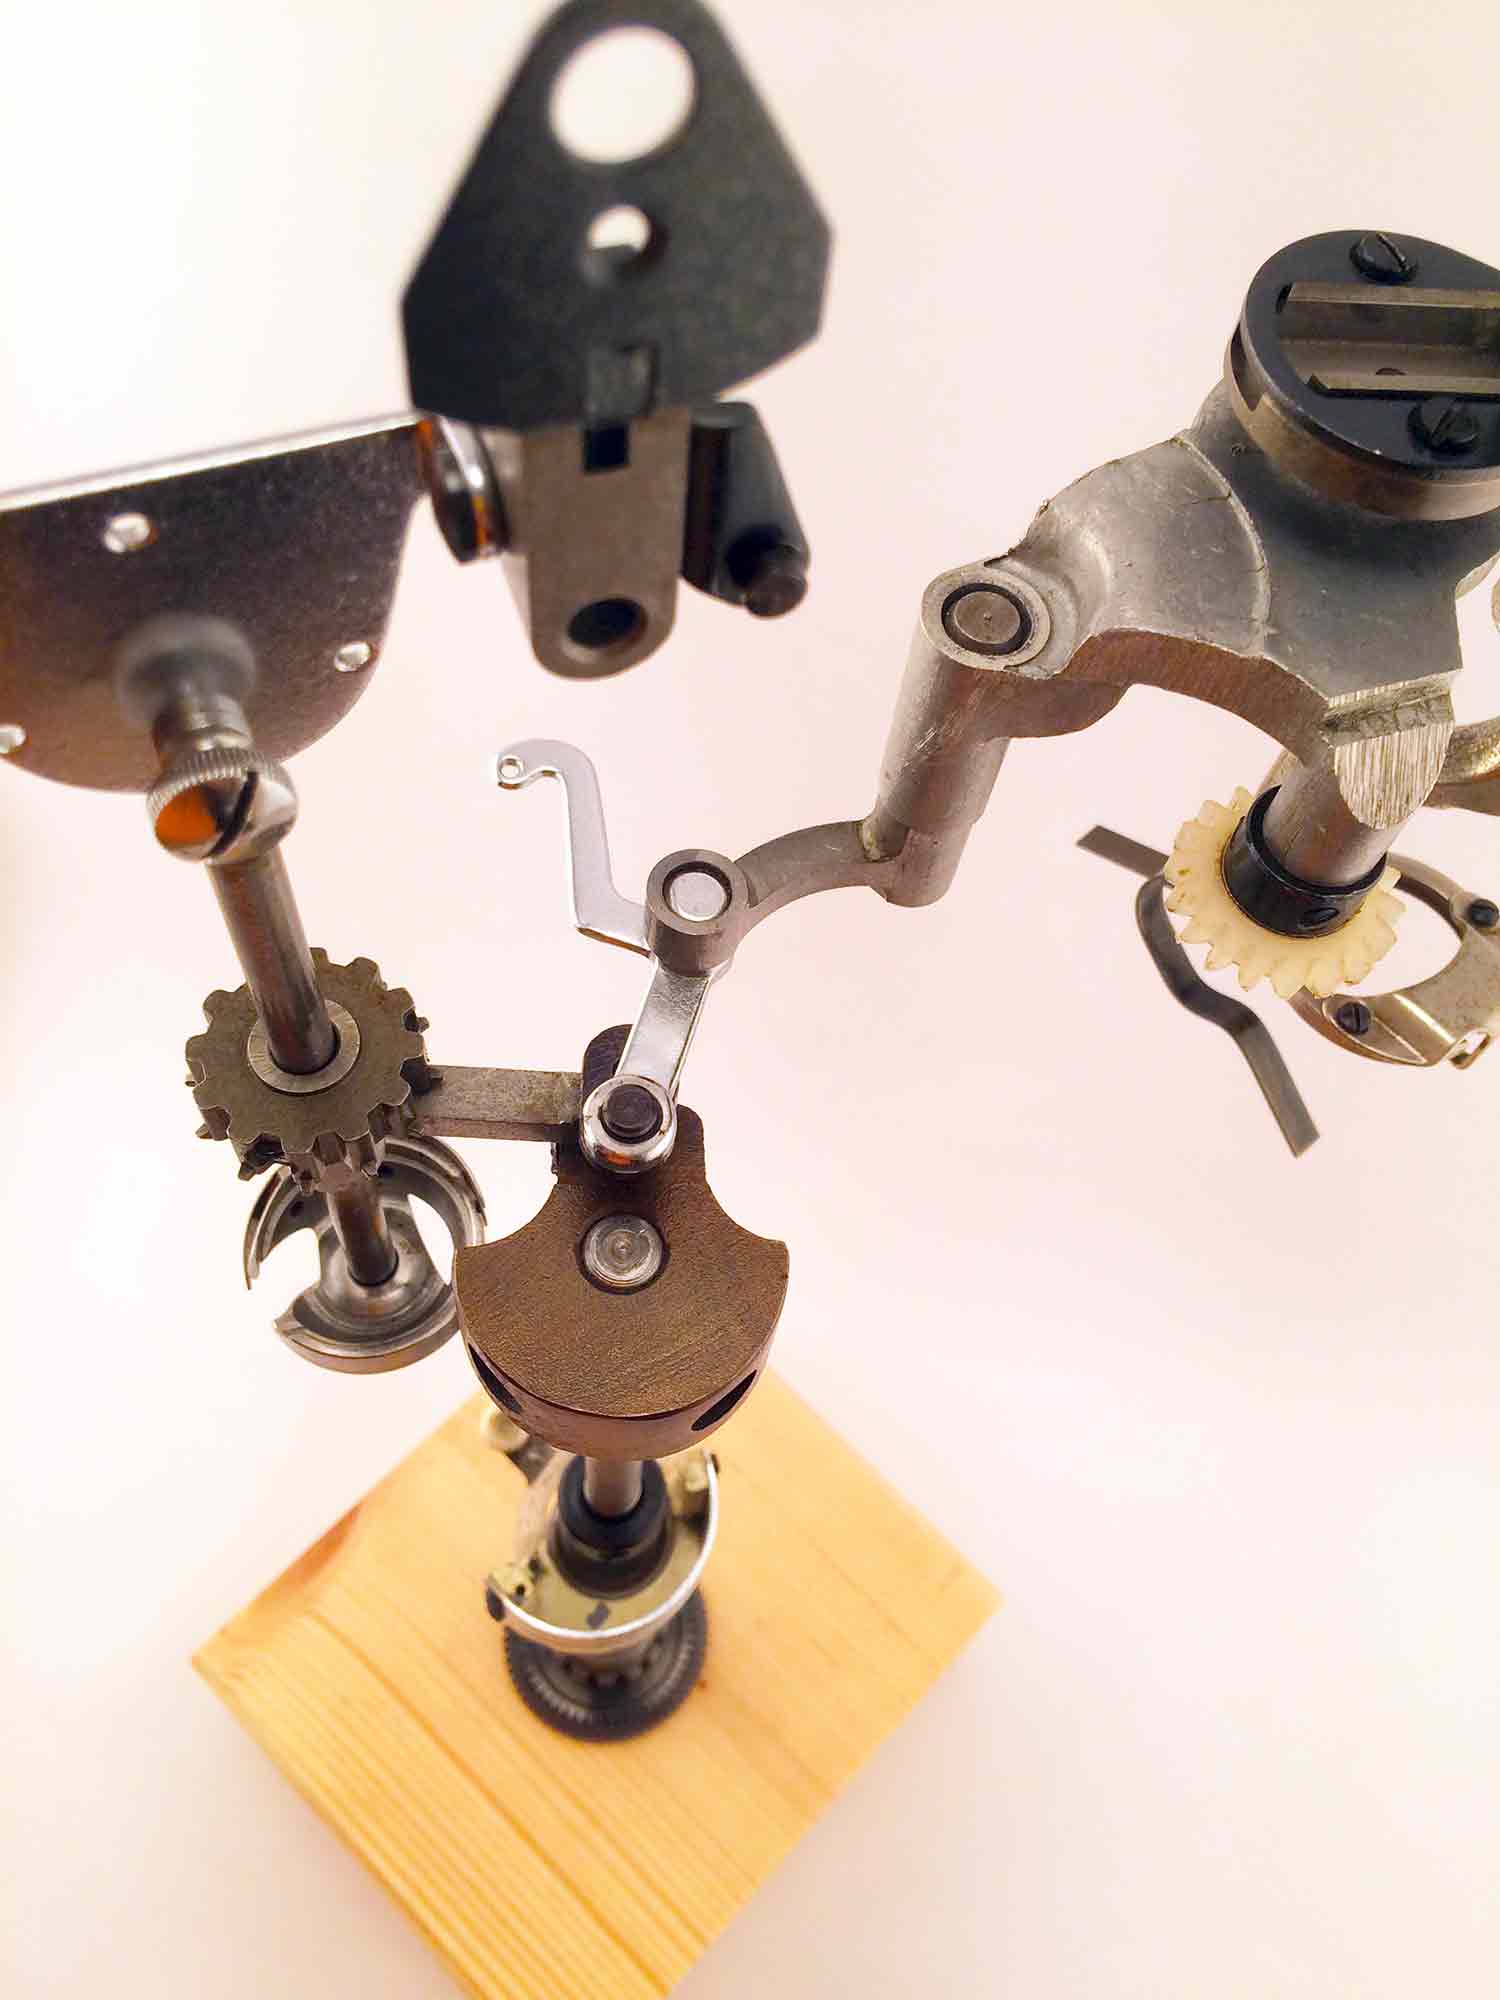 Escultura de una interpretación de una máquina de coser